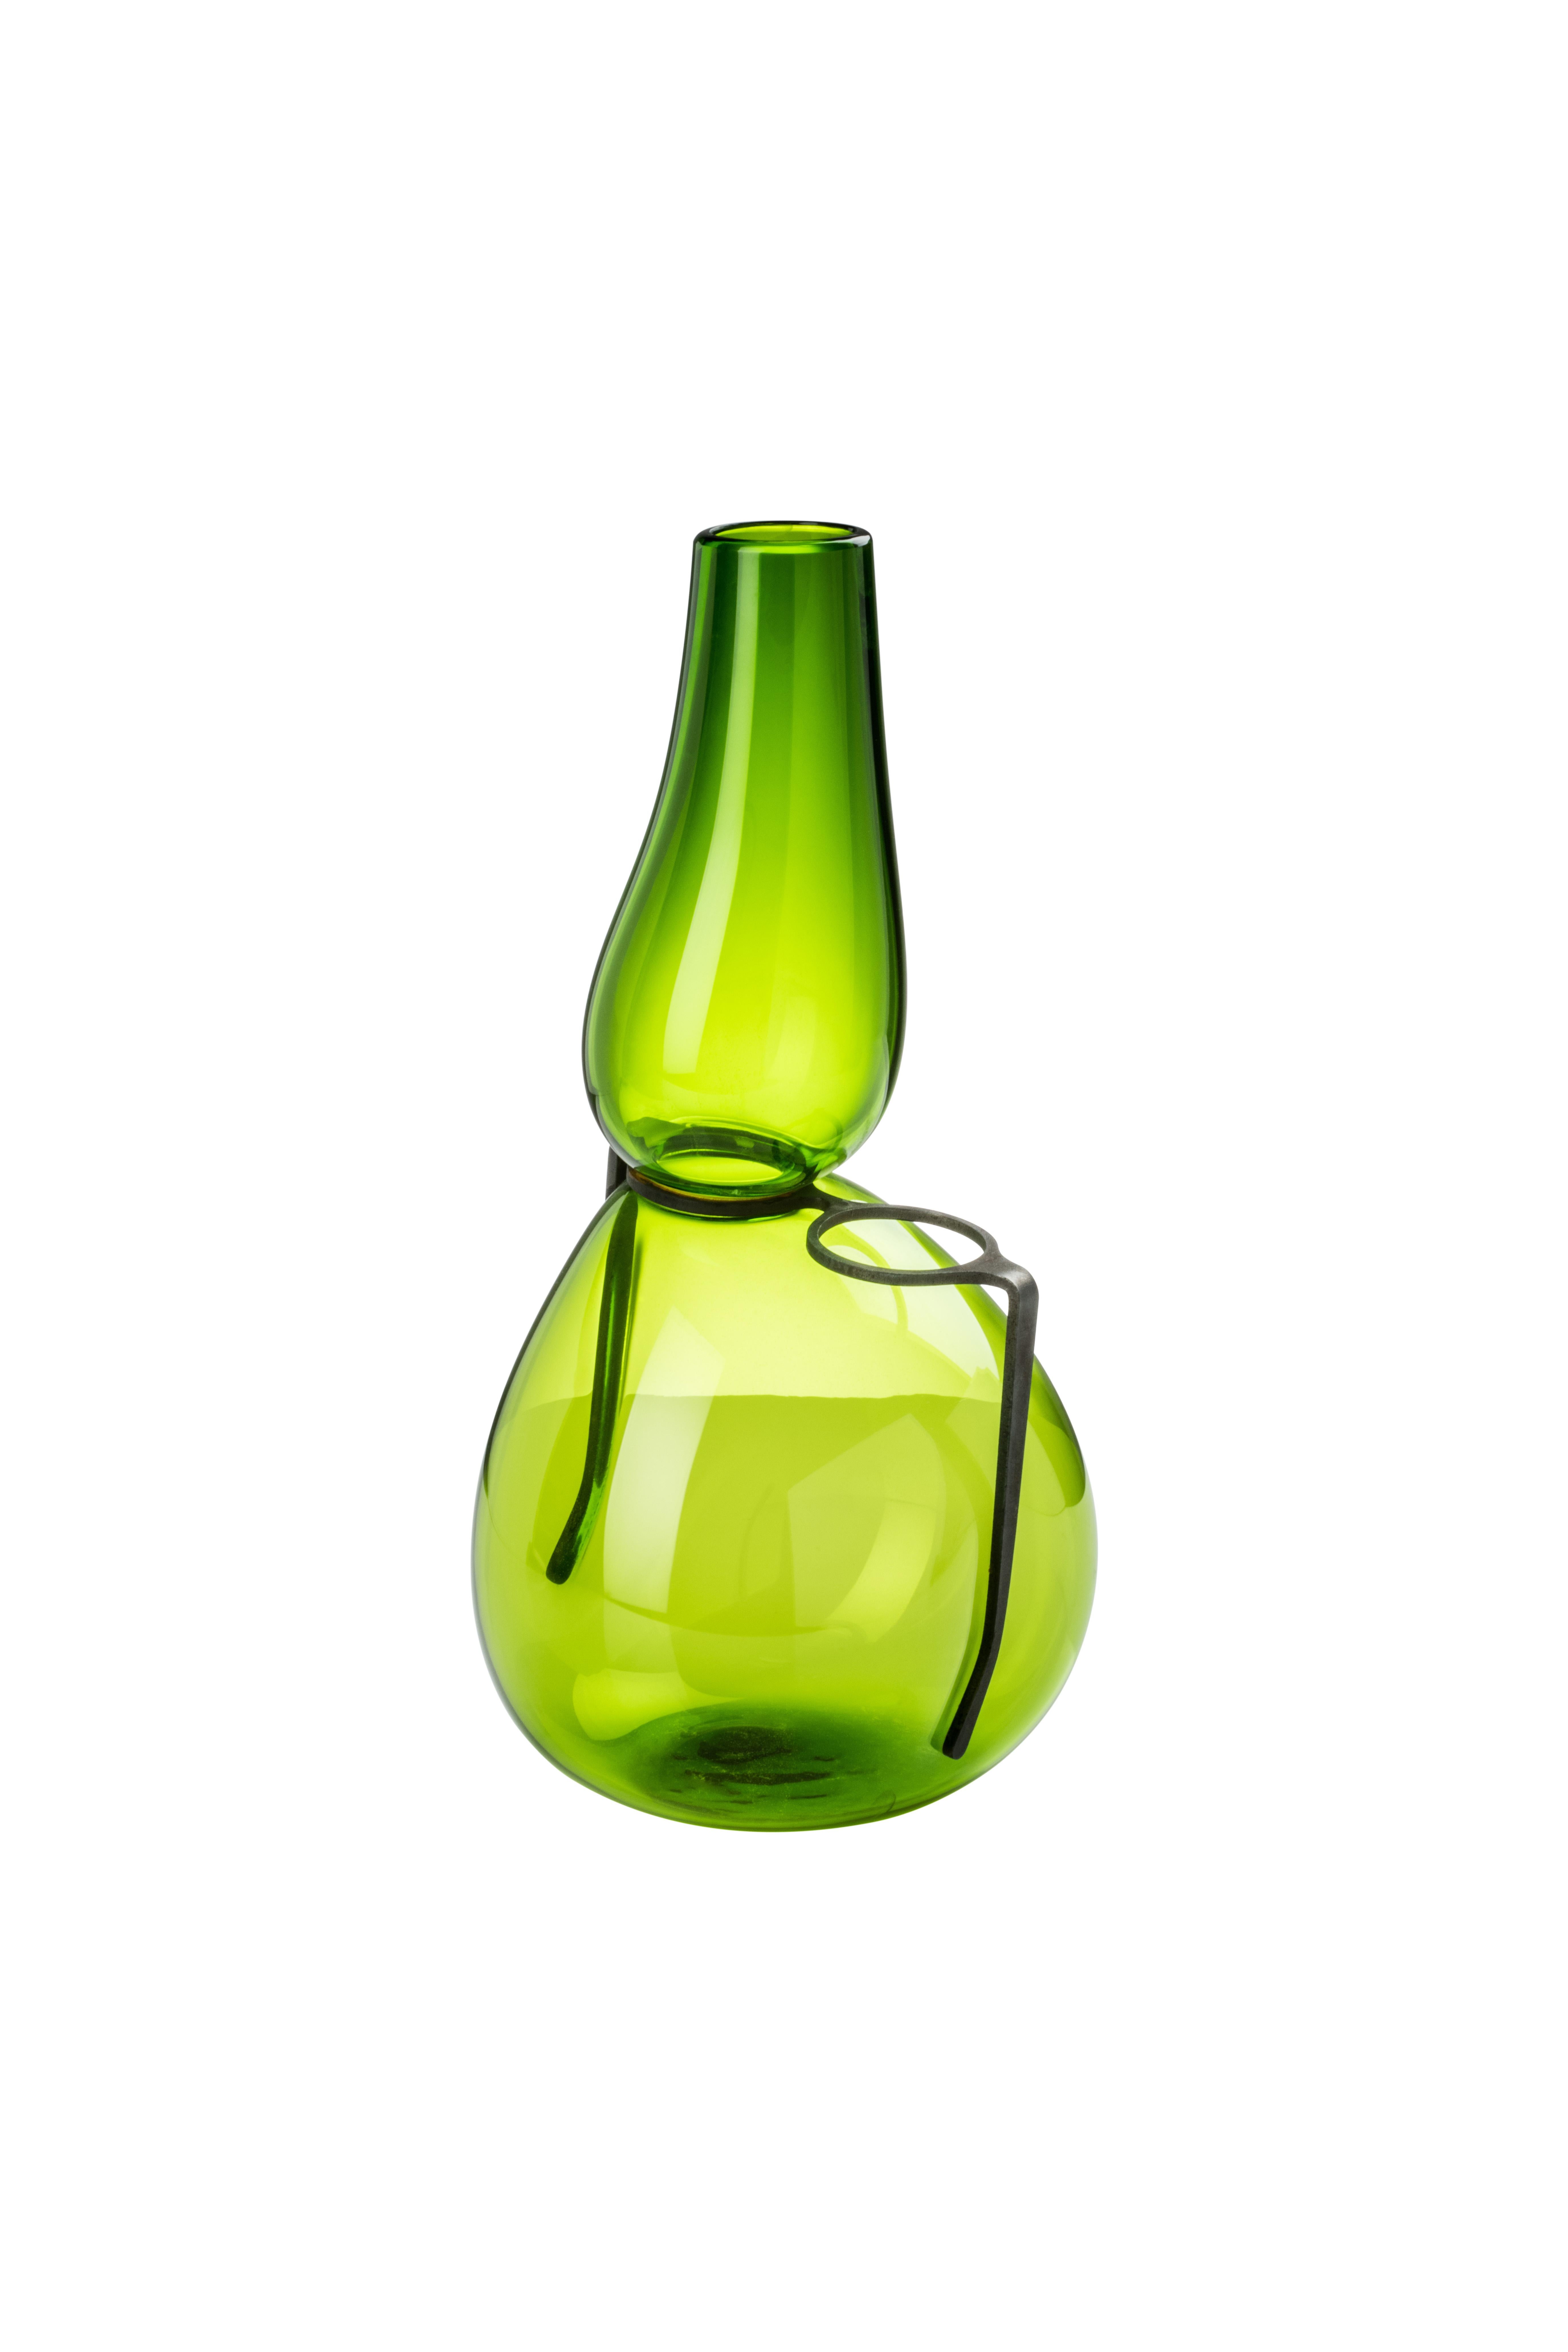 Vase en verre Venini avec un col étroit et une sculpture de verres en verre noir. Présenté dans un verre de couleur vert gazon. Parfait pour la décoration intérieure en tant que conteneur ou pièce forte pour n'importe quelle pièce.

Dimensions :